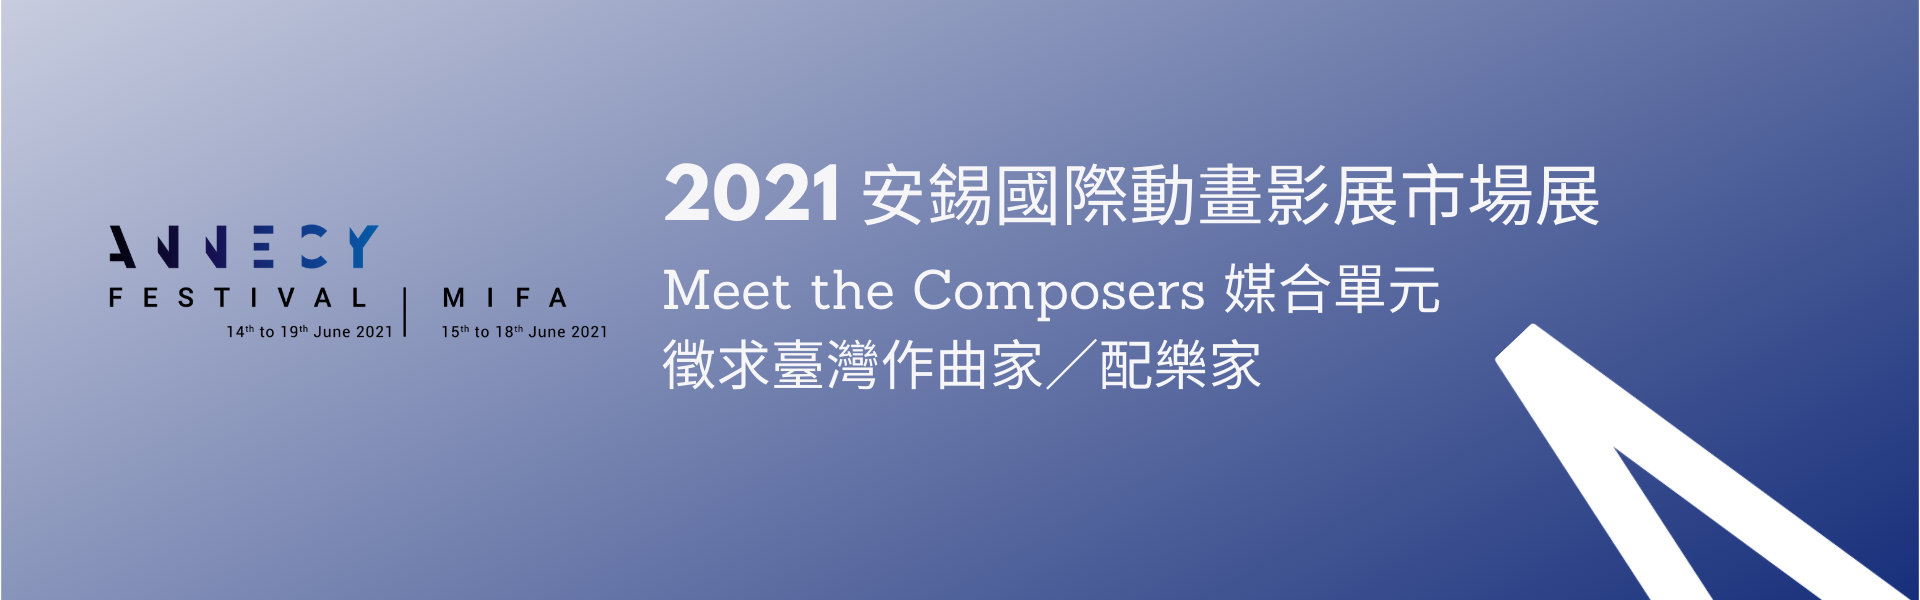 徵求臺灣作曲家／配樂家 參加2021 安錫國際動畫影展市場展 「Meet the Composers」媒合單元（已截止）